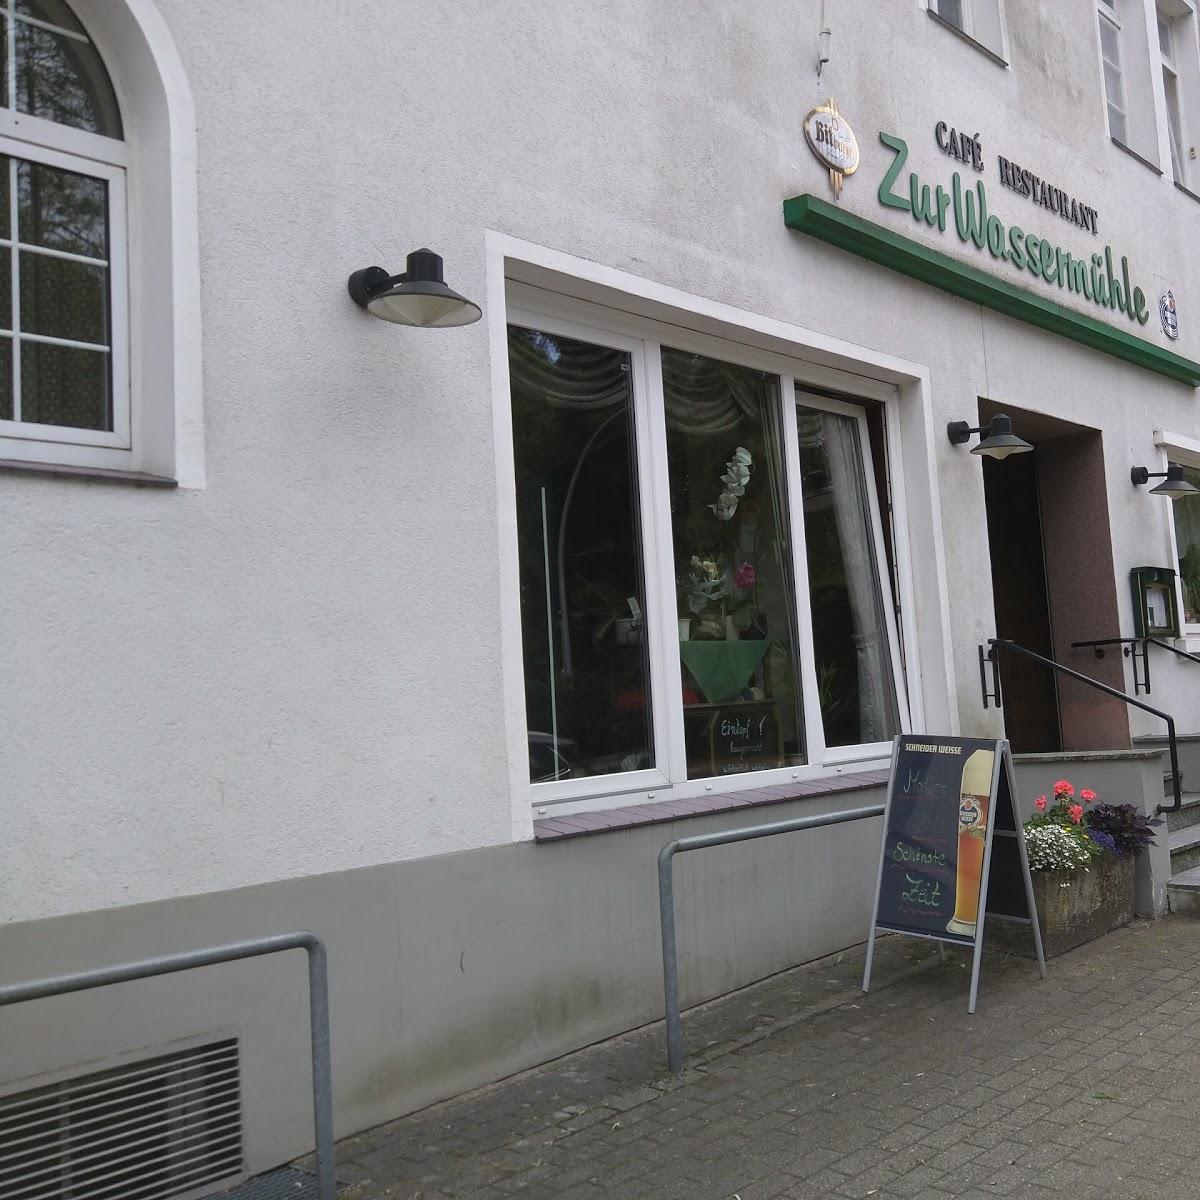 Restaurant "Zur Wassermühle Restaurant" in  Munster